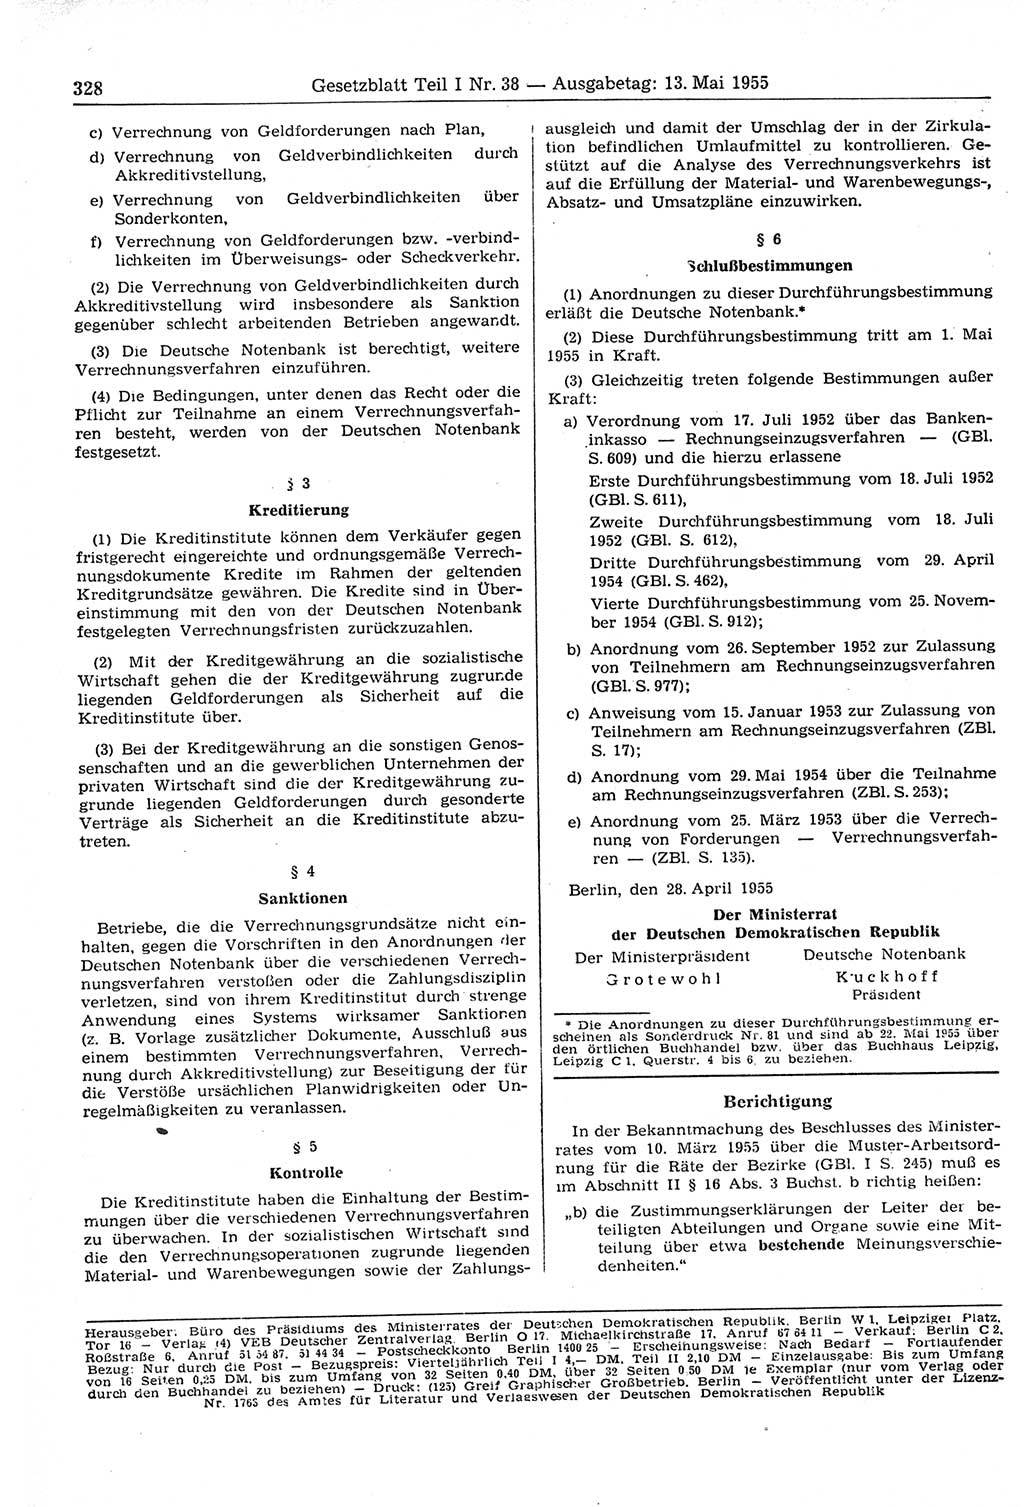 Gesetzblatt (GBl.) der Deutschen Demokratischen Republik (DDR) Teil Ⅰ 1955, Seite 328 (GBl. DDR Ⅰ 1955, S. 328)